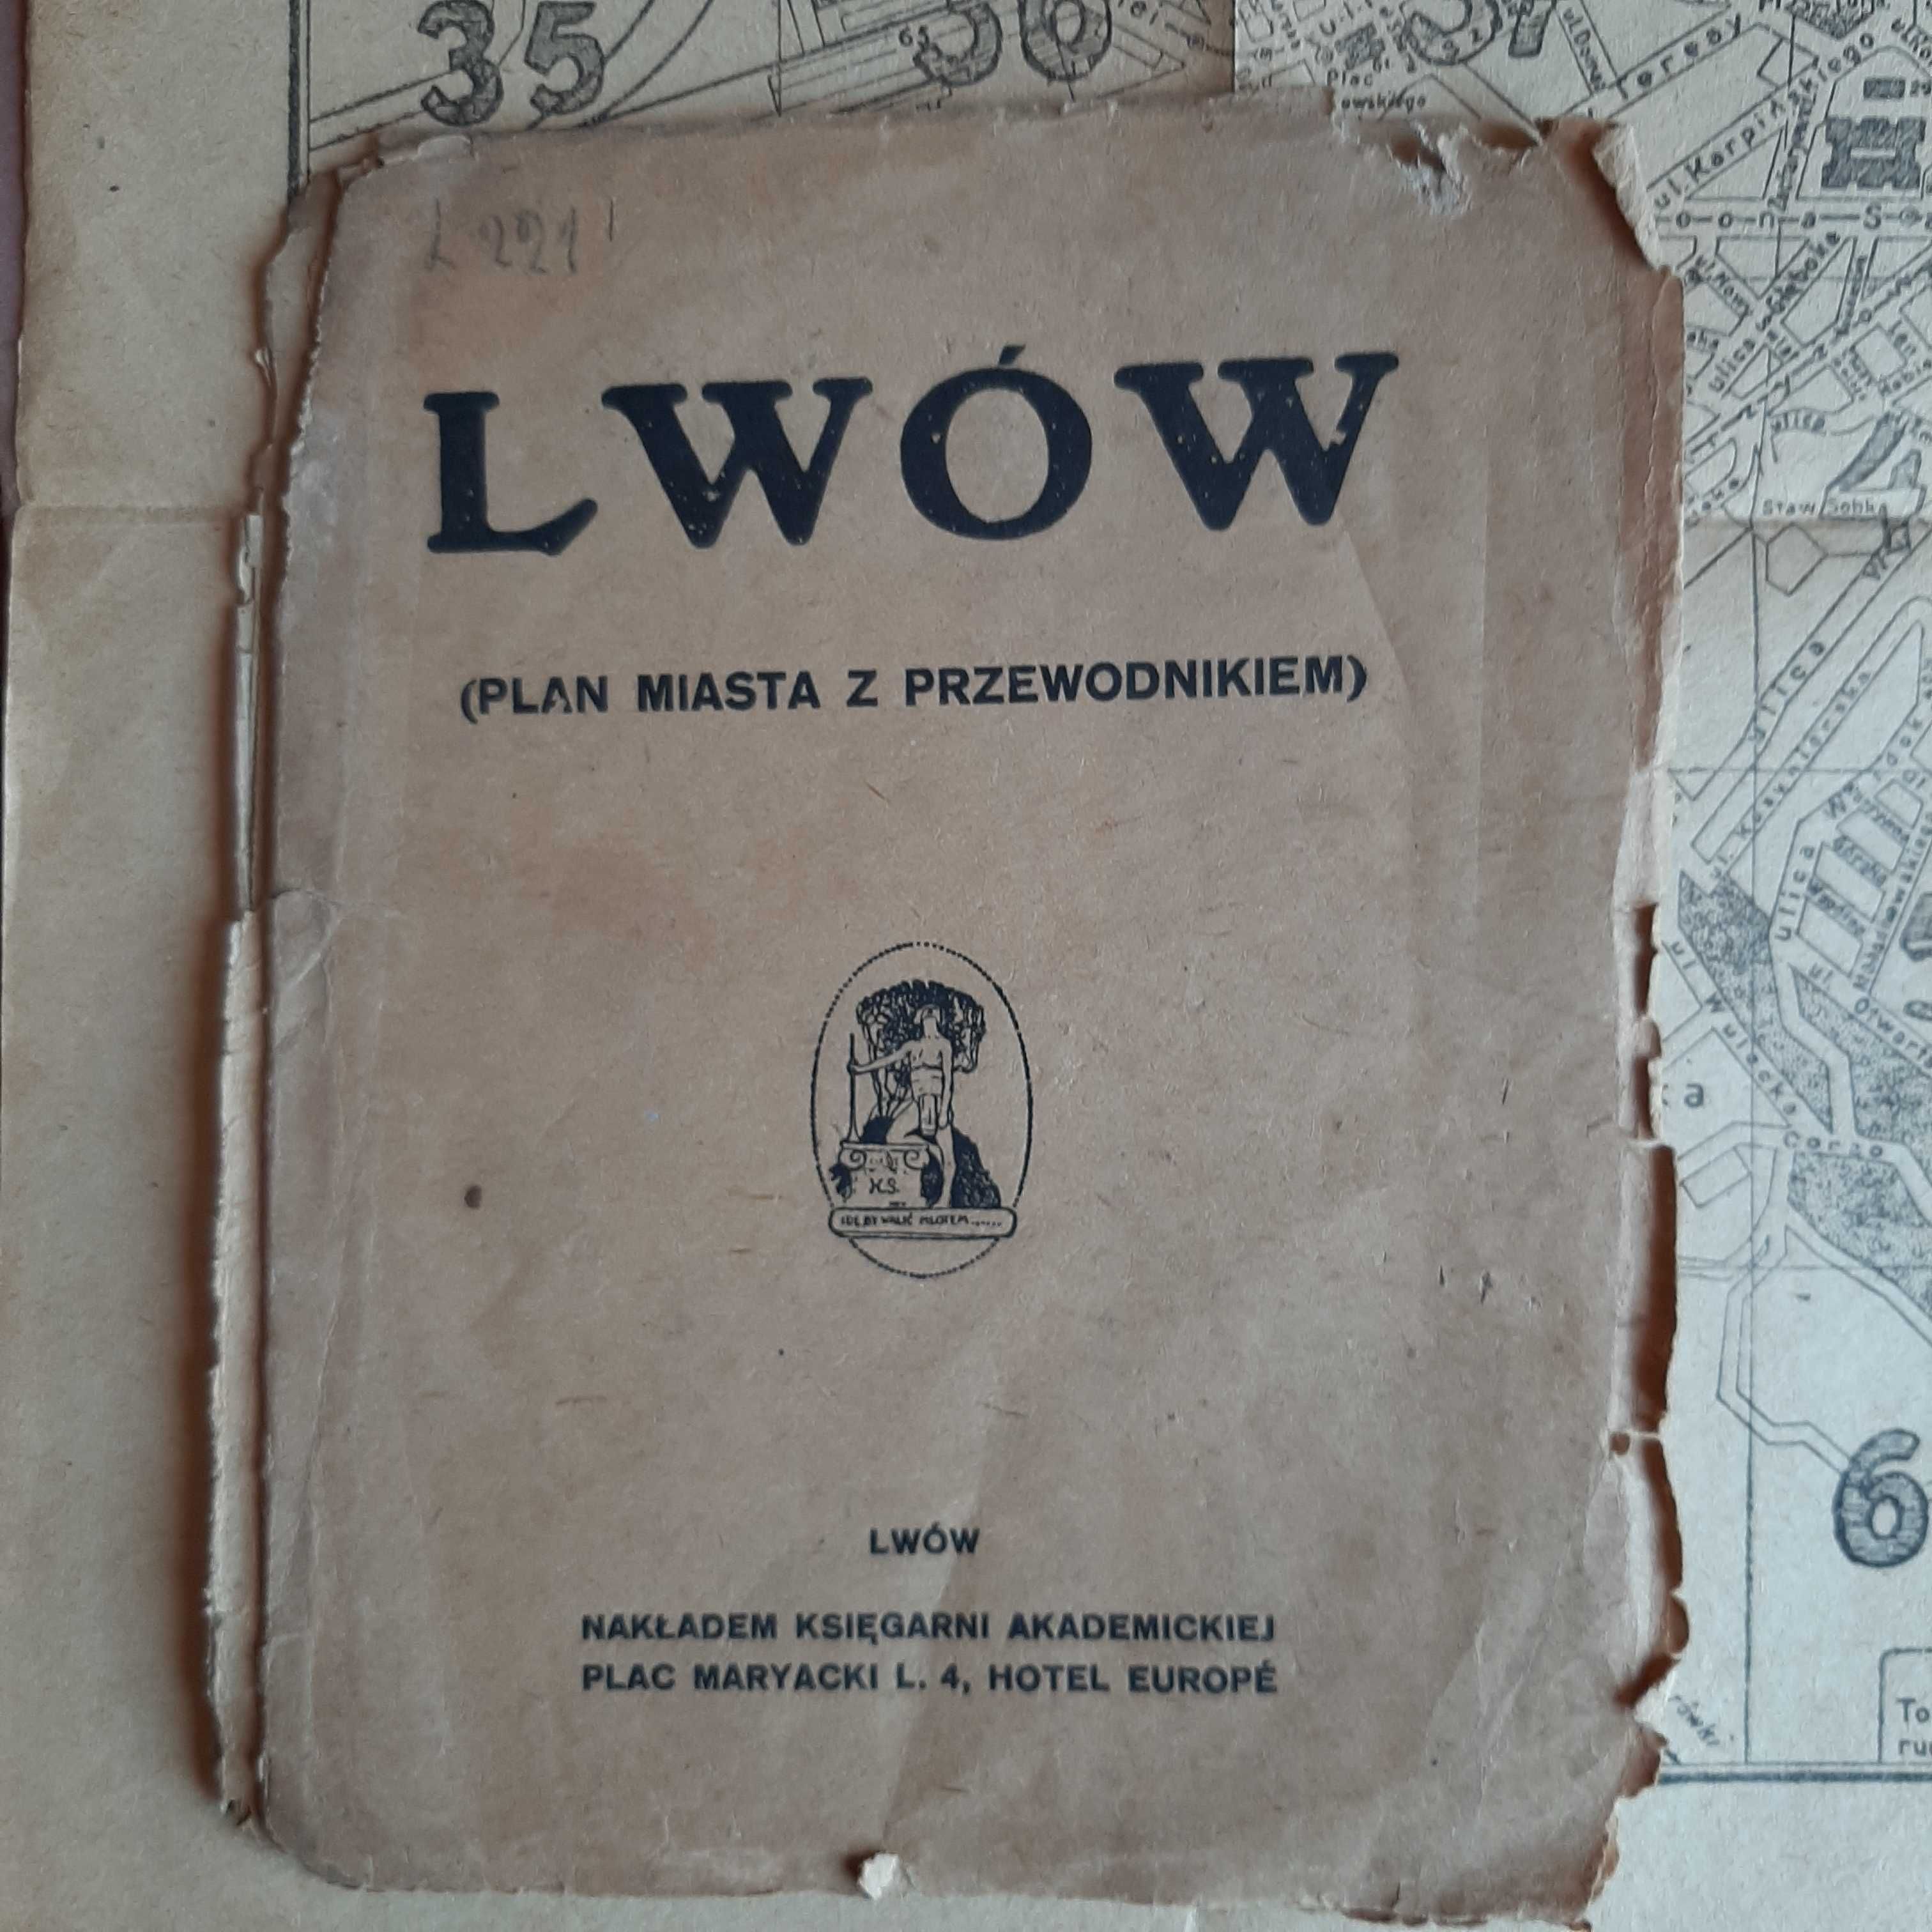 Jan Gieryński 'Lwów nieznany' + Plany Lwowa z komentarzami 1921 r.